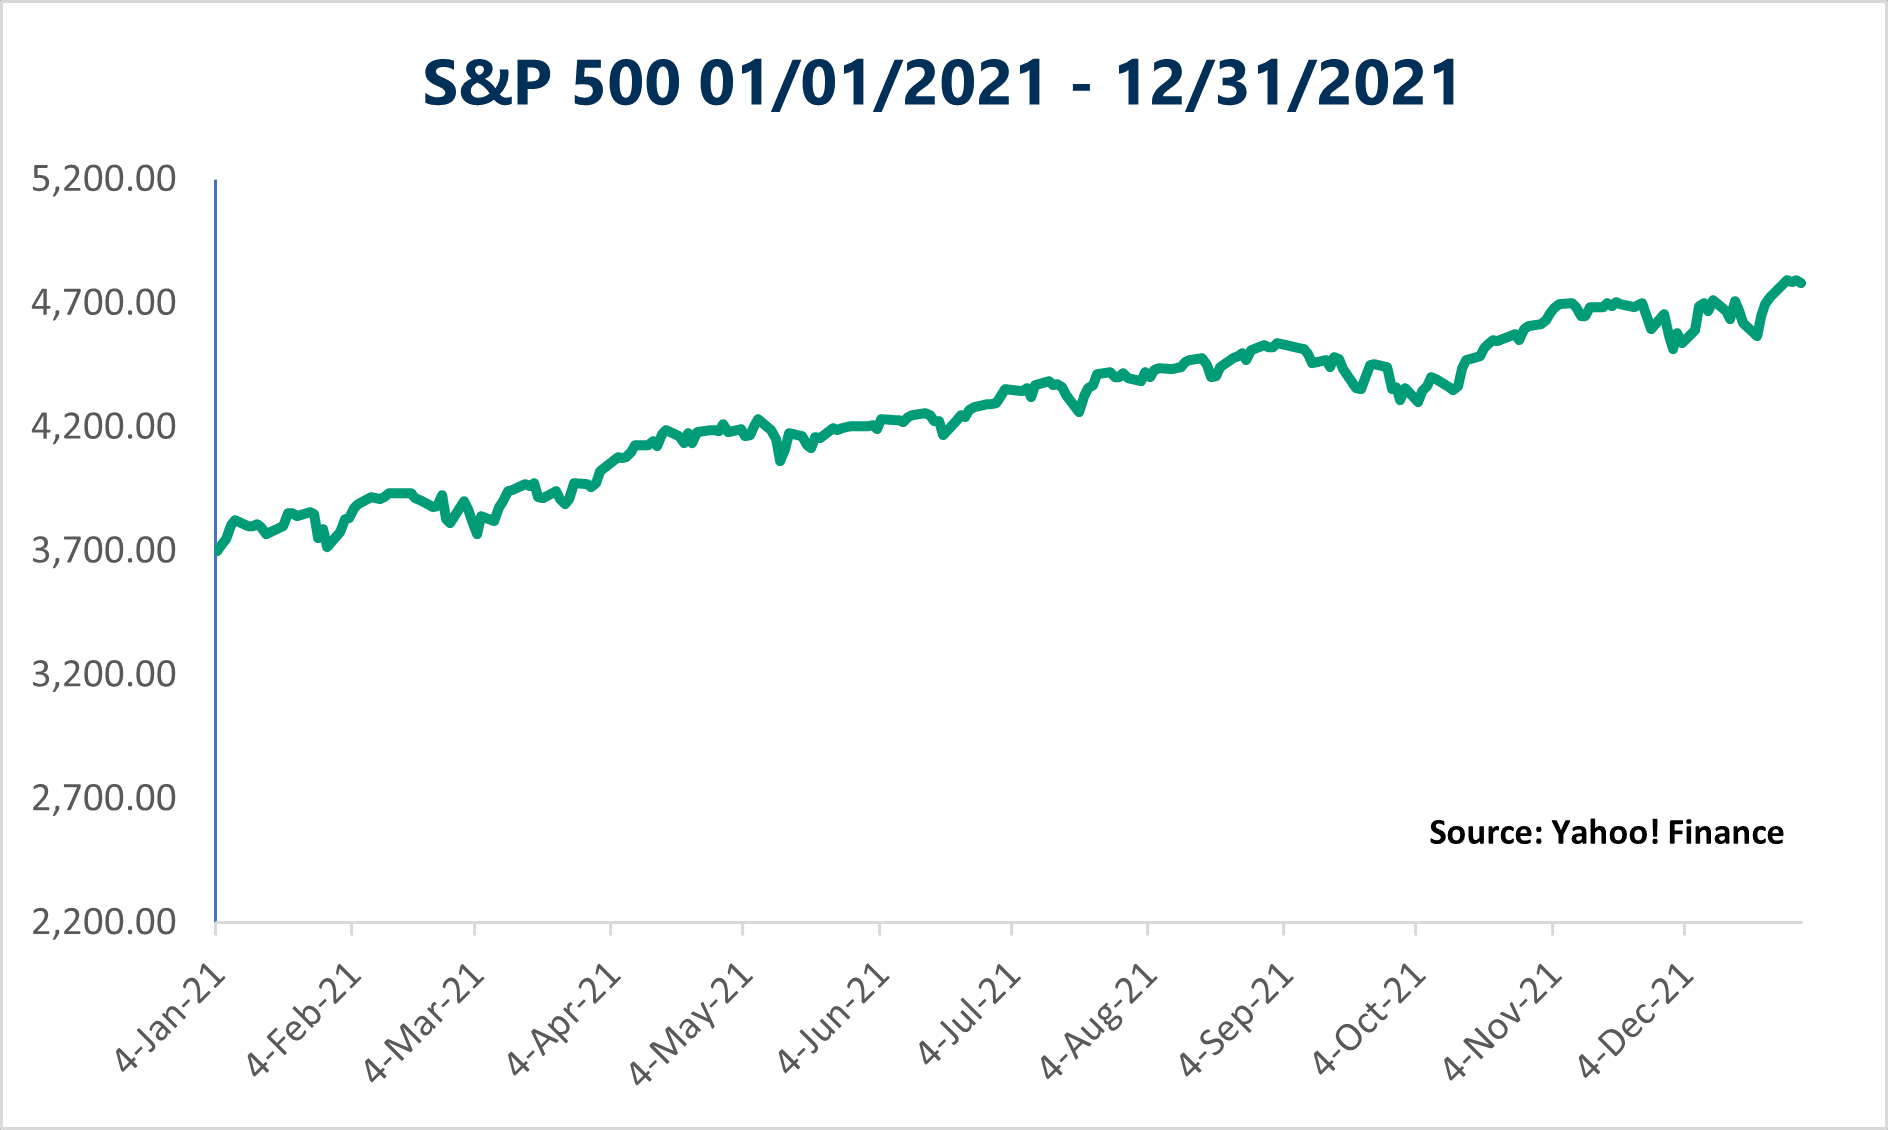 S&P 500 Index 1/1/21-12/31/21